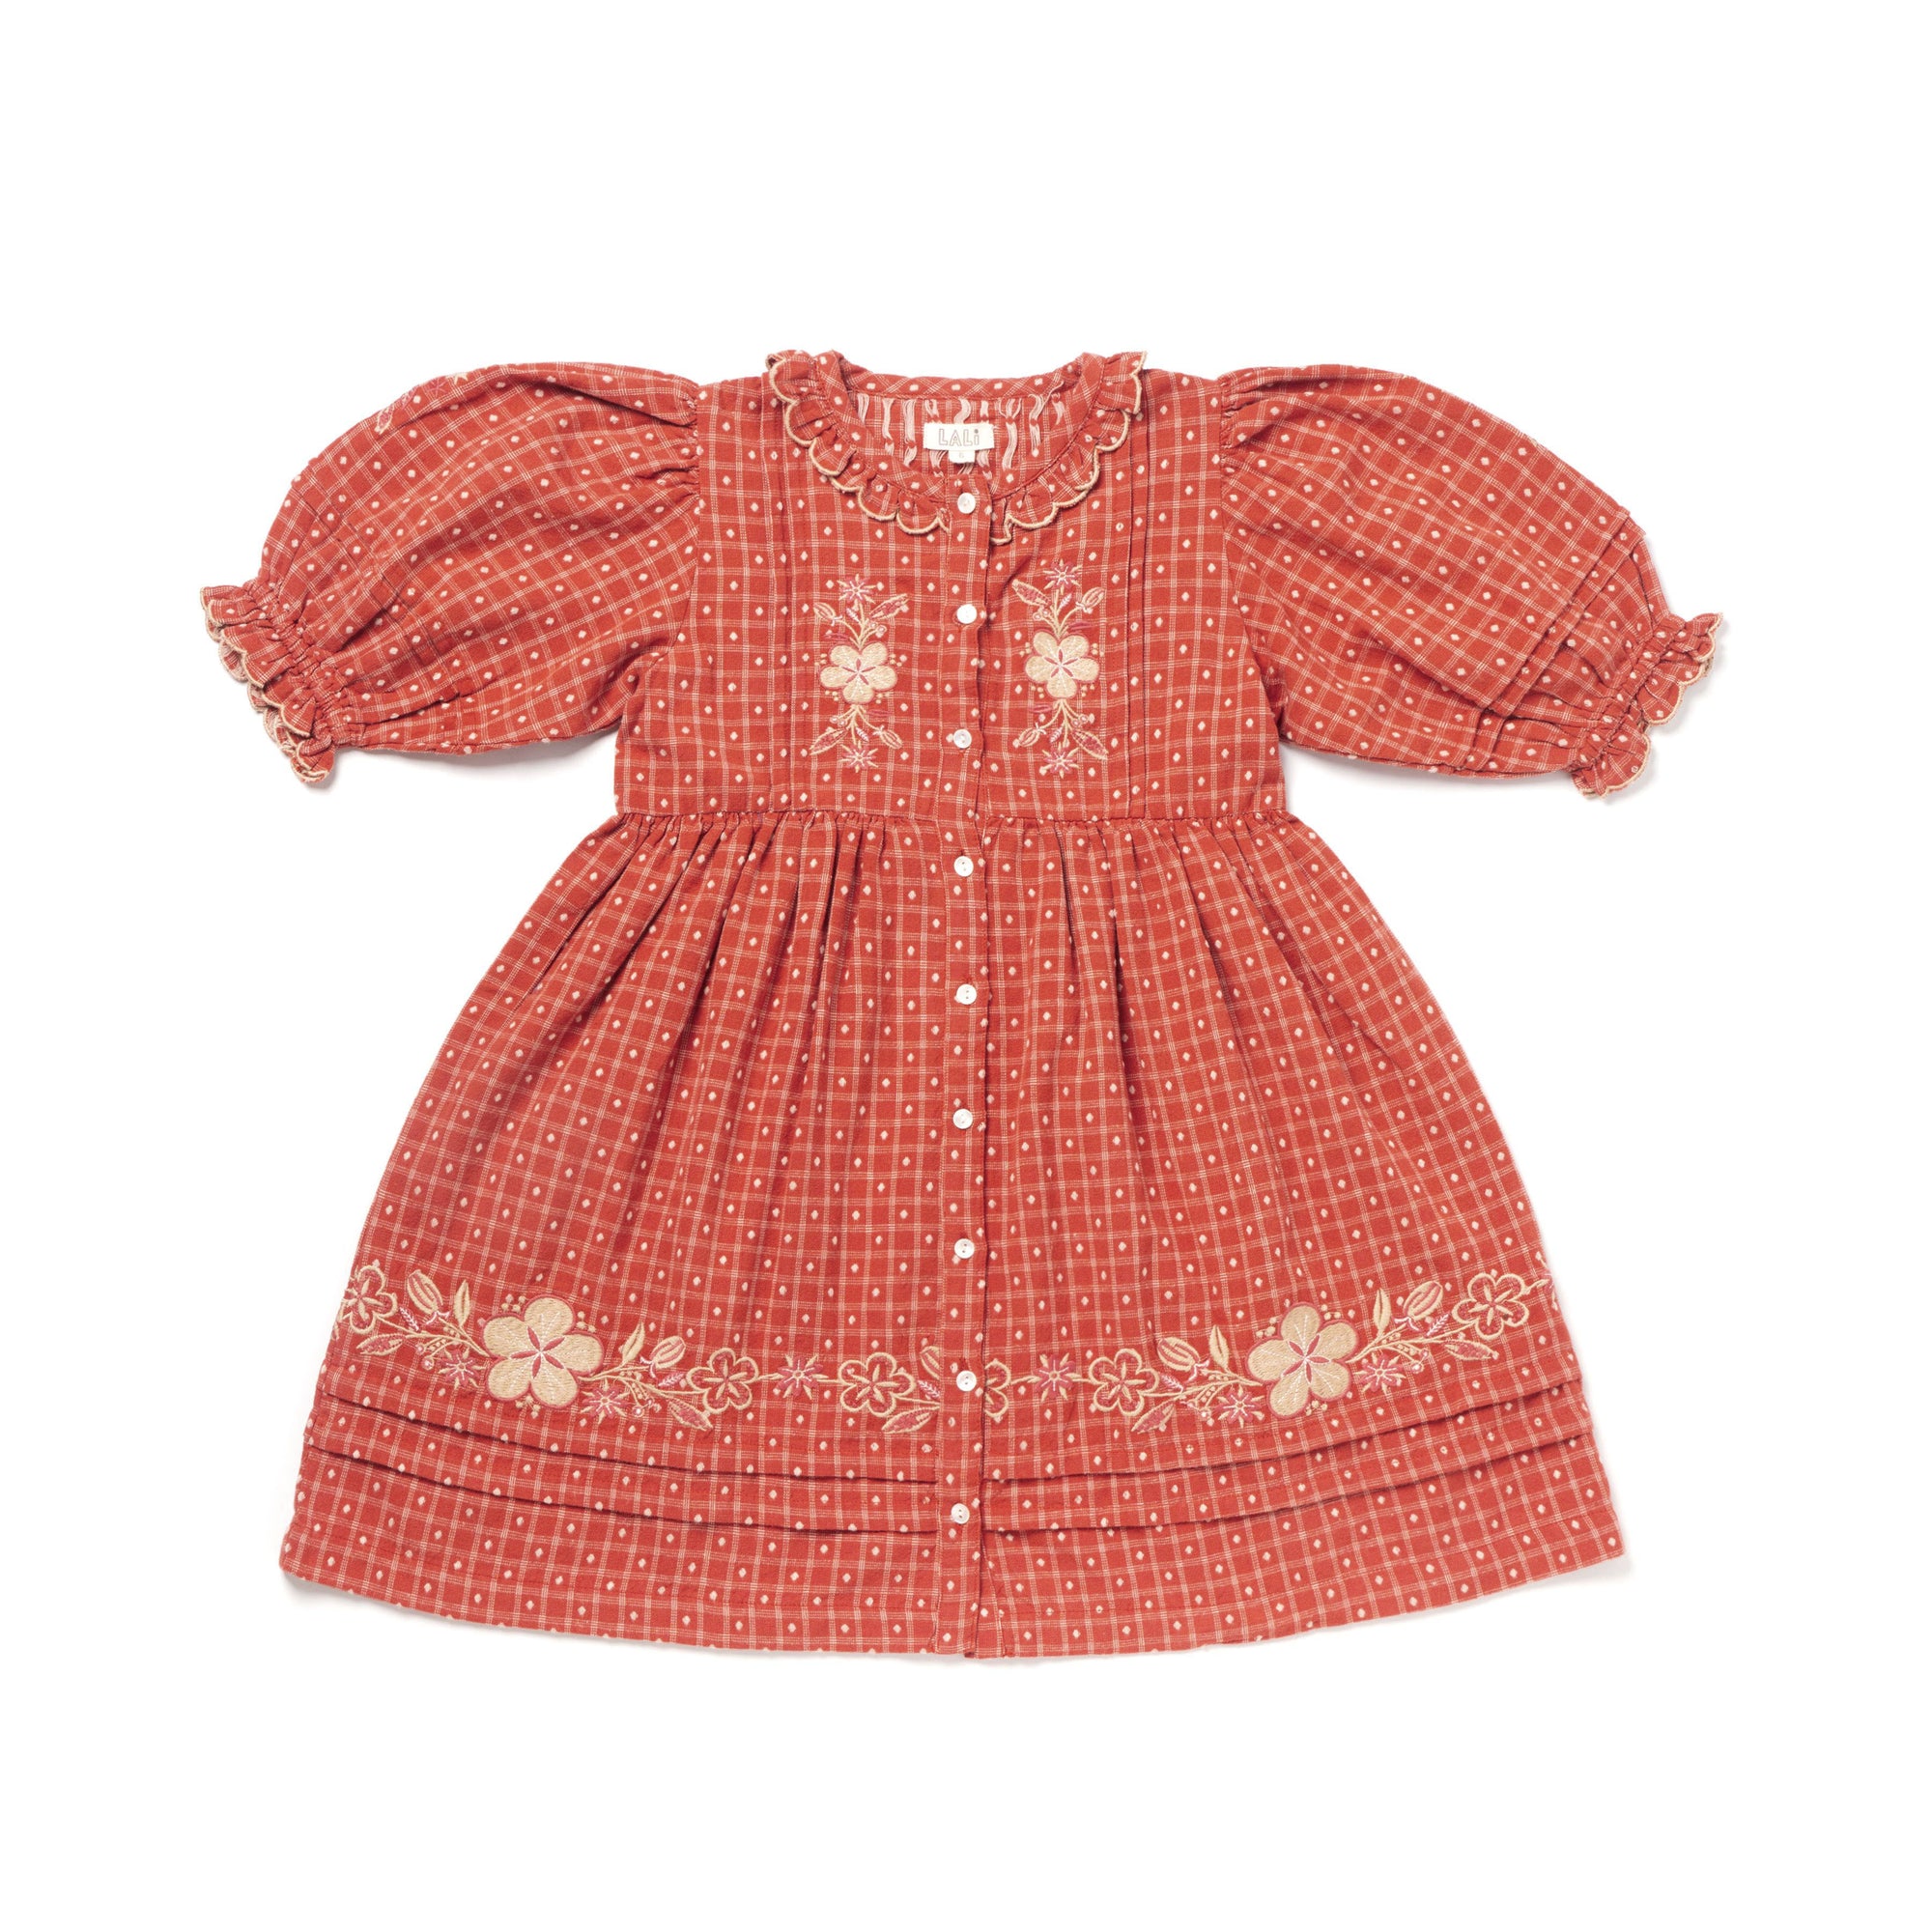 Ivy Dress | Auburn Yarn Dye with Embroidery